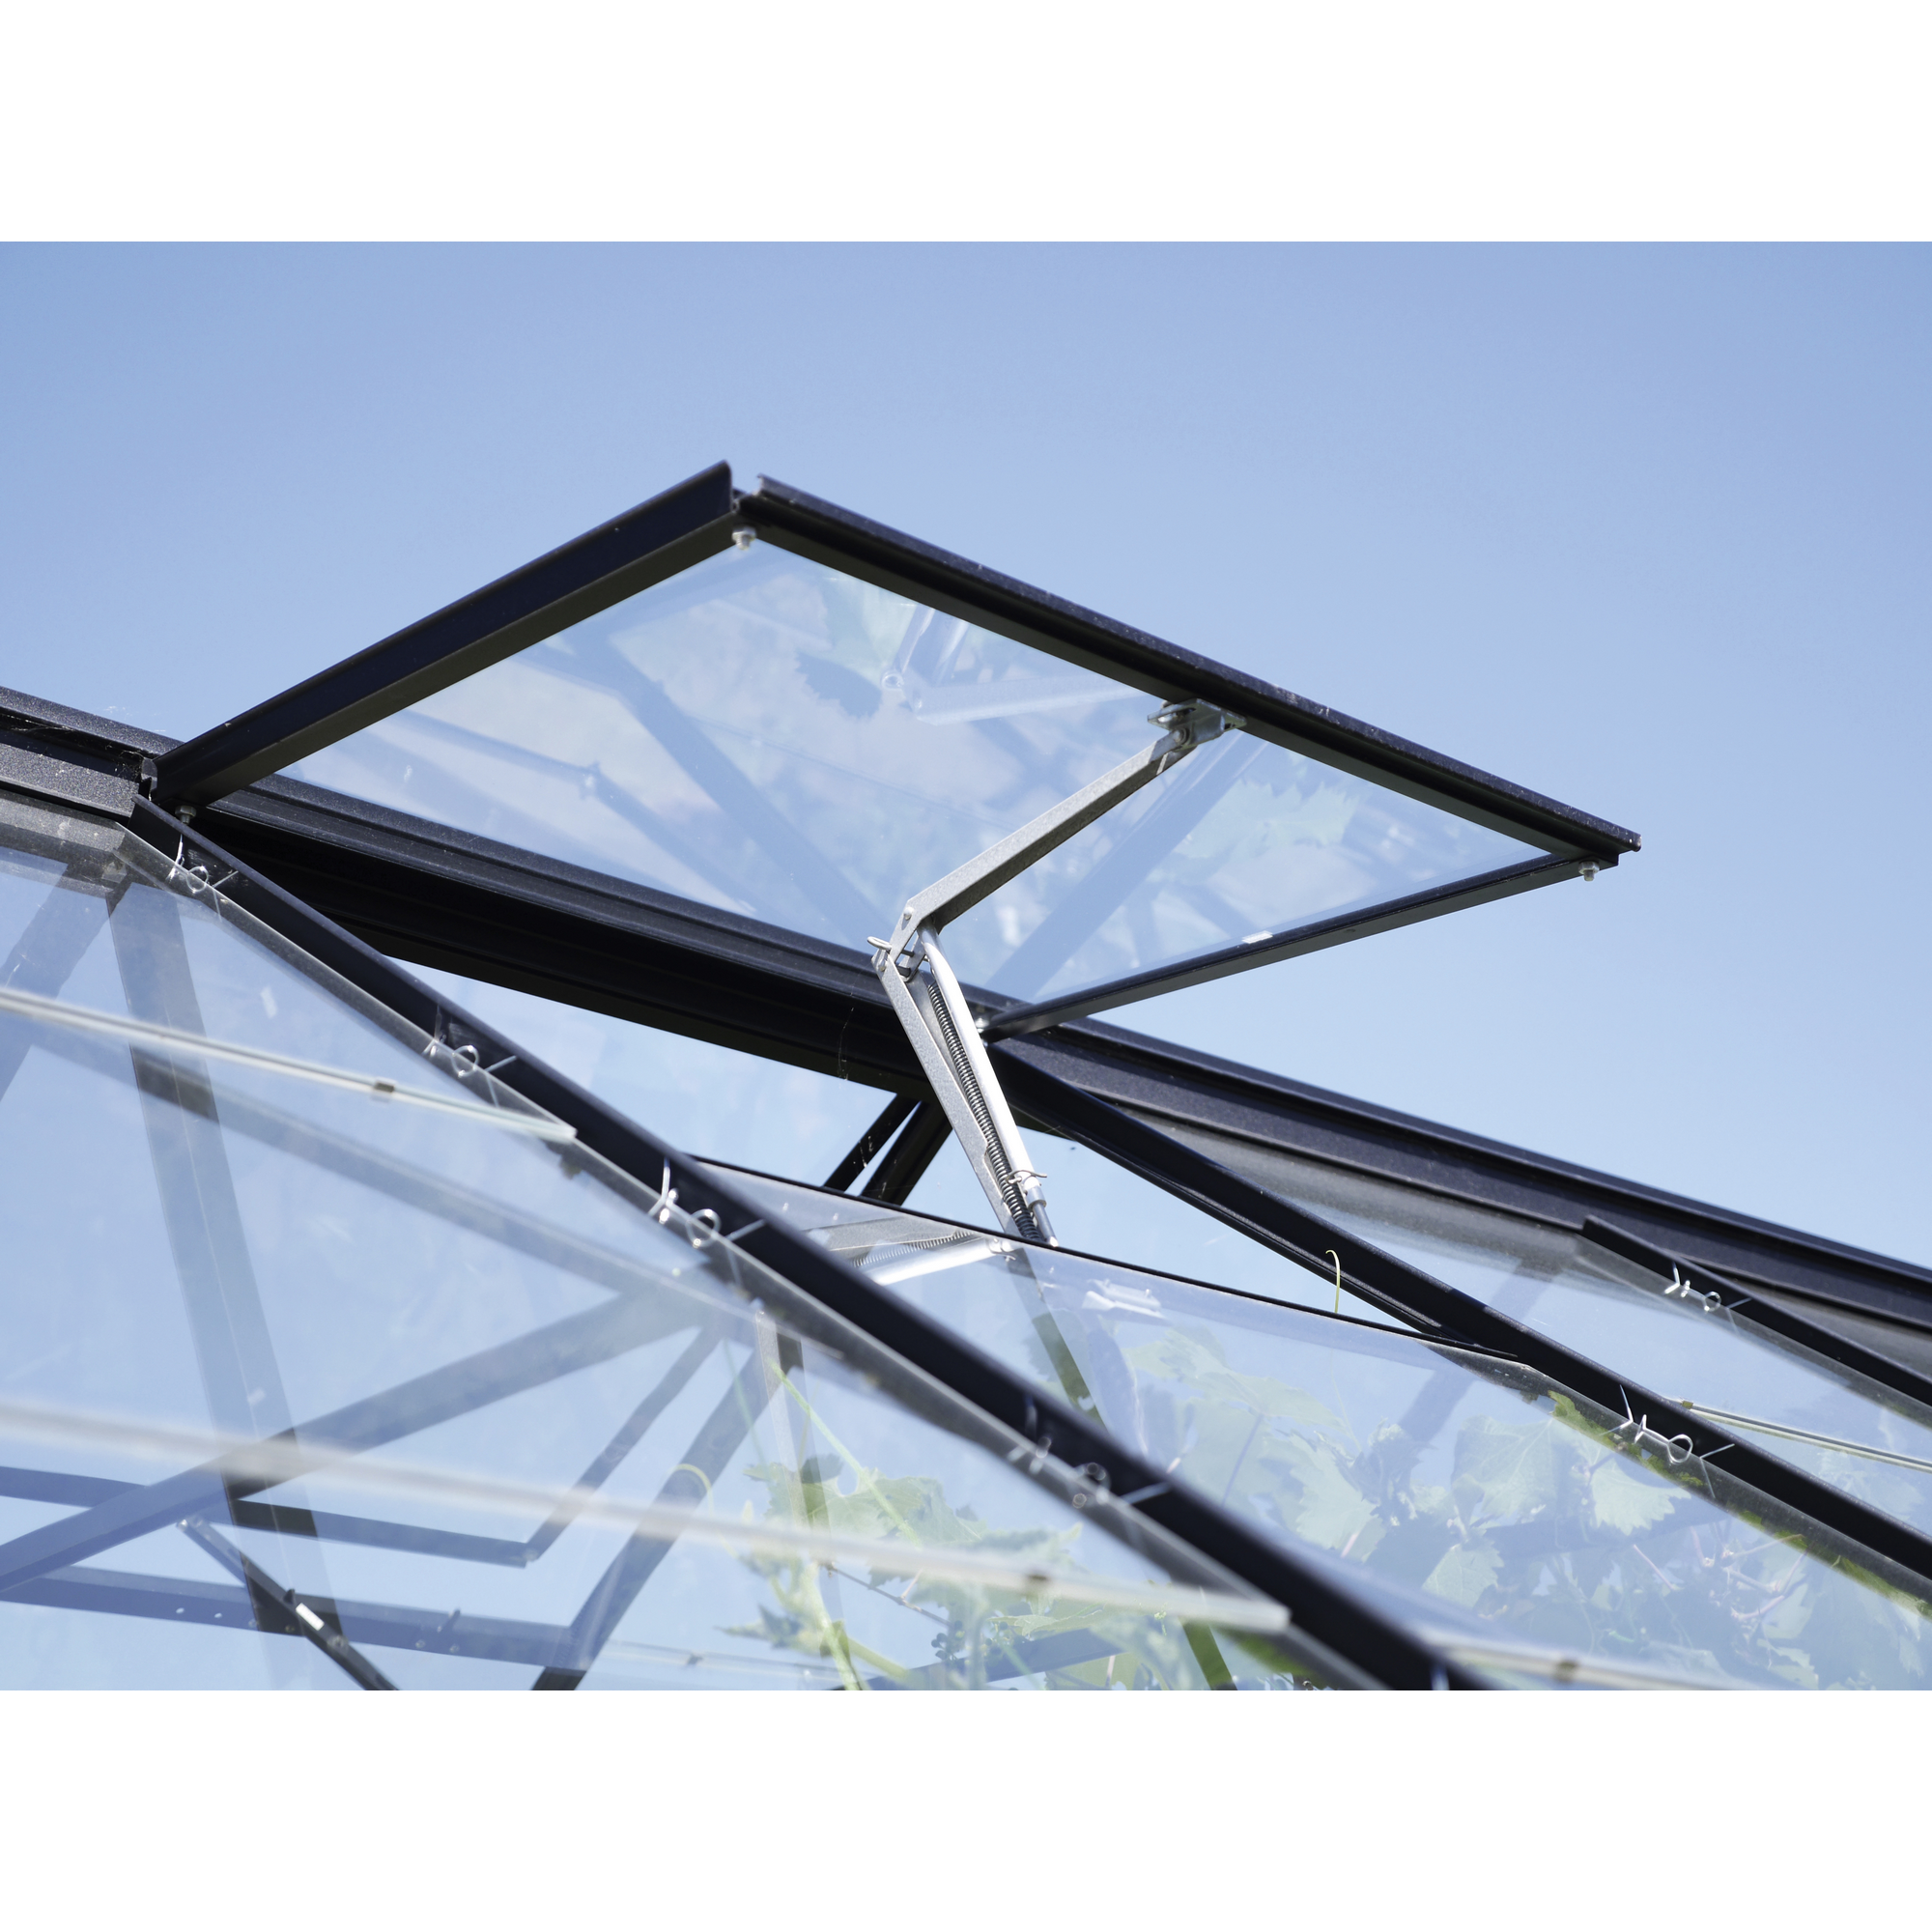 Fensterheber Aluminium für Gewächshäuser silberfarben + product picture